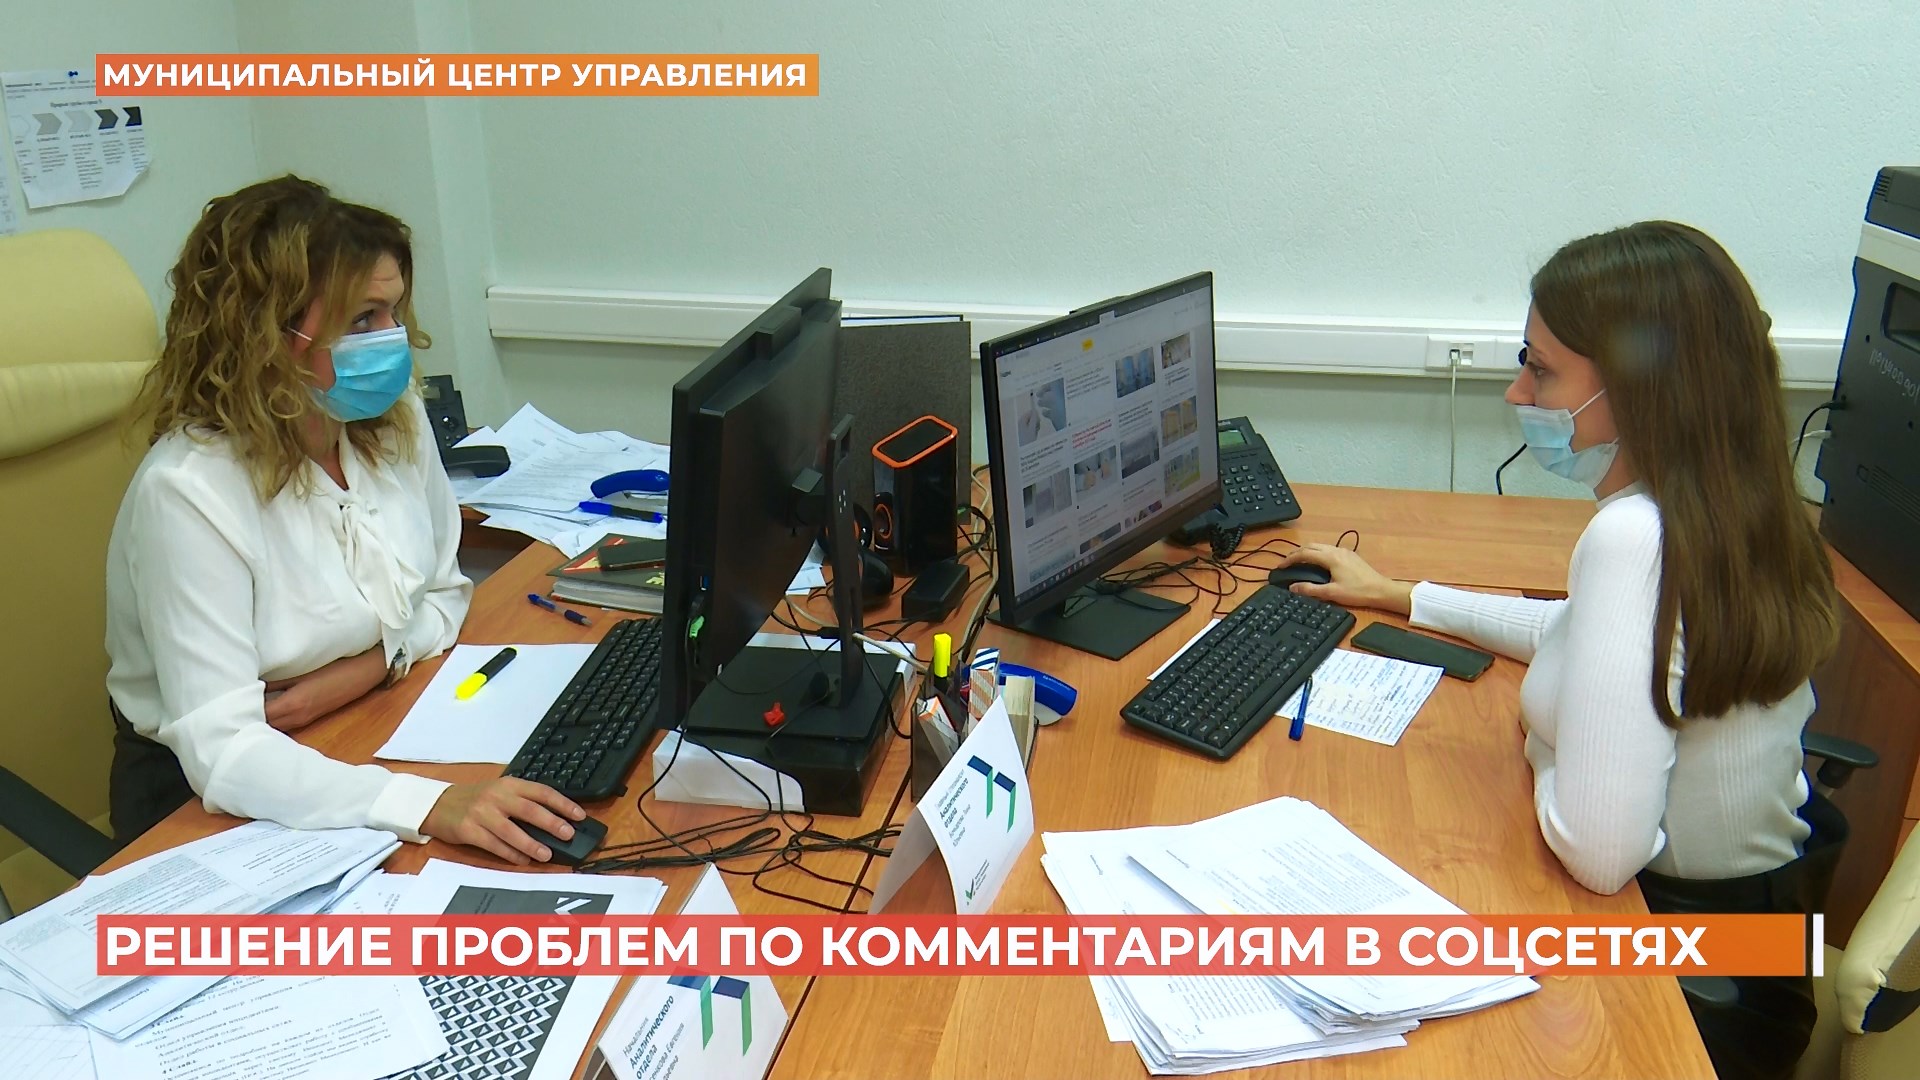 Больше 2500 обращений за месяц обработал в соцсетях новый муниципальный центр управления Ростова